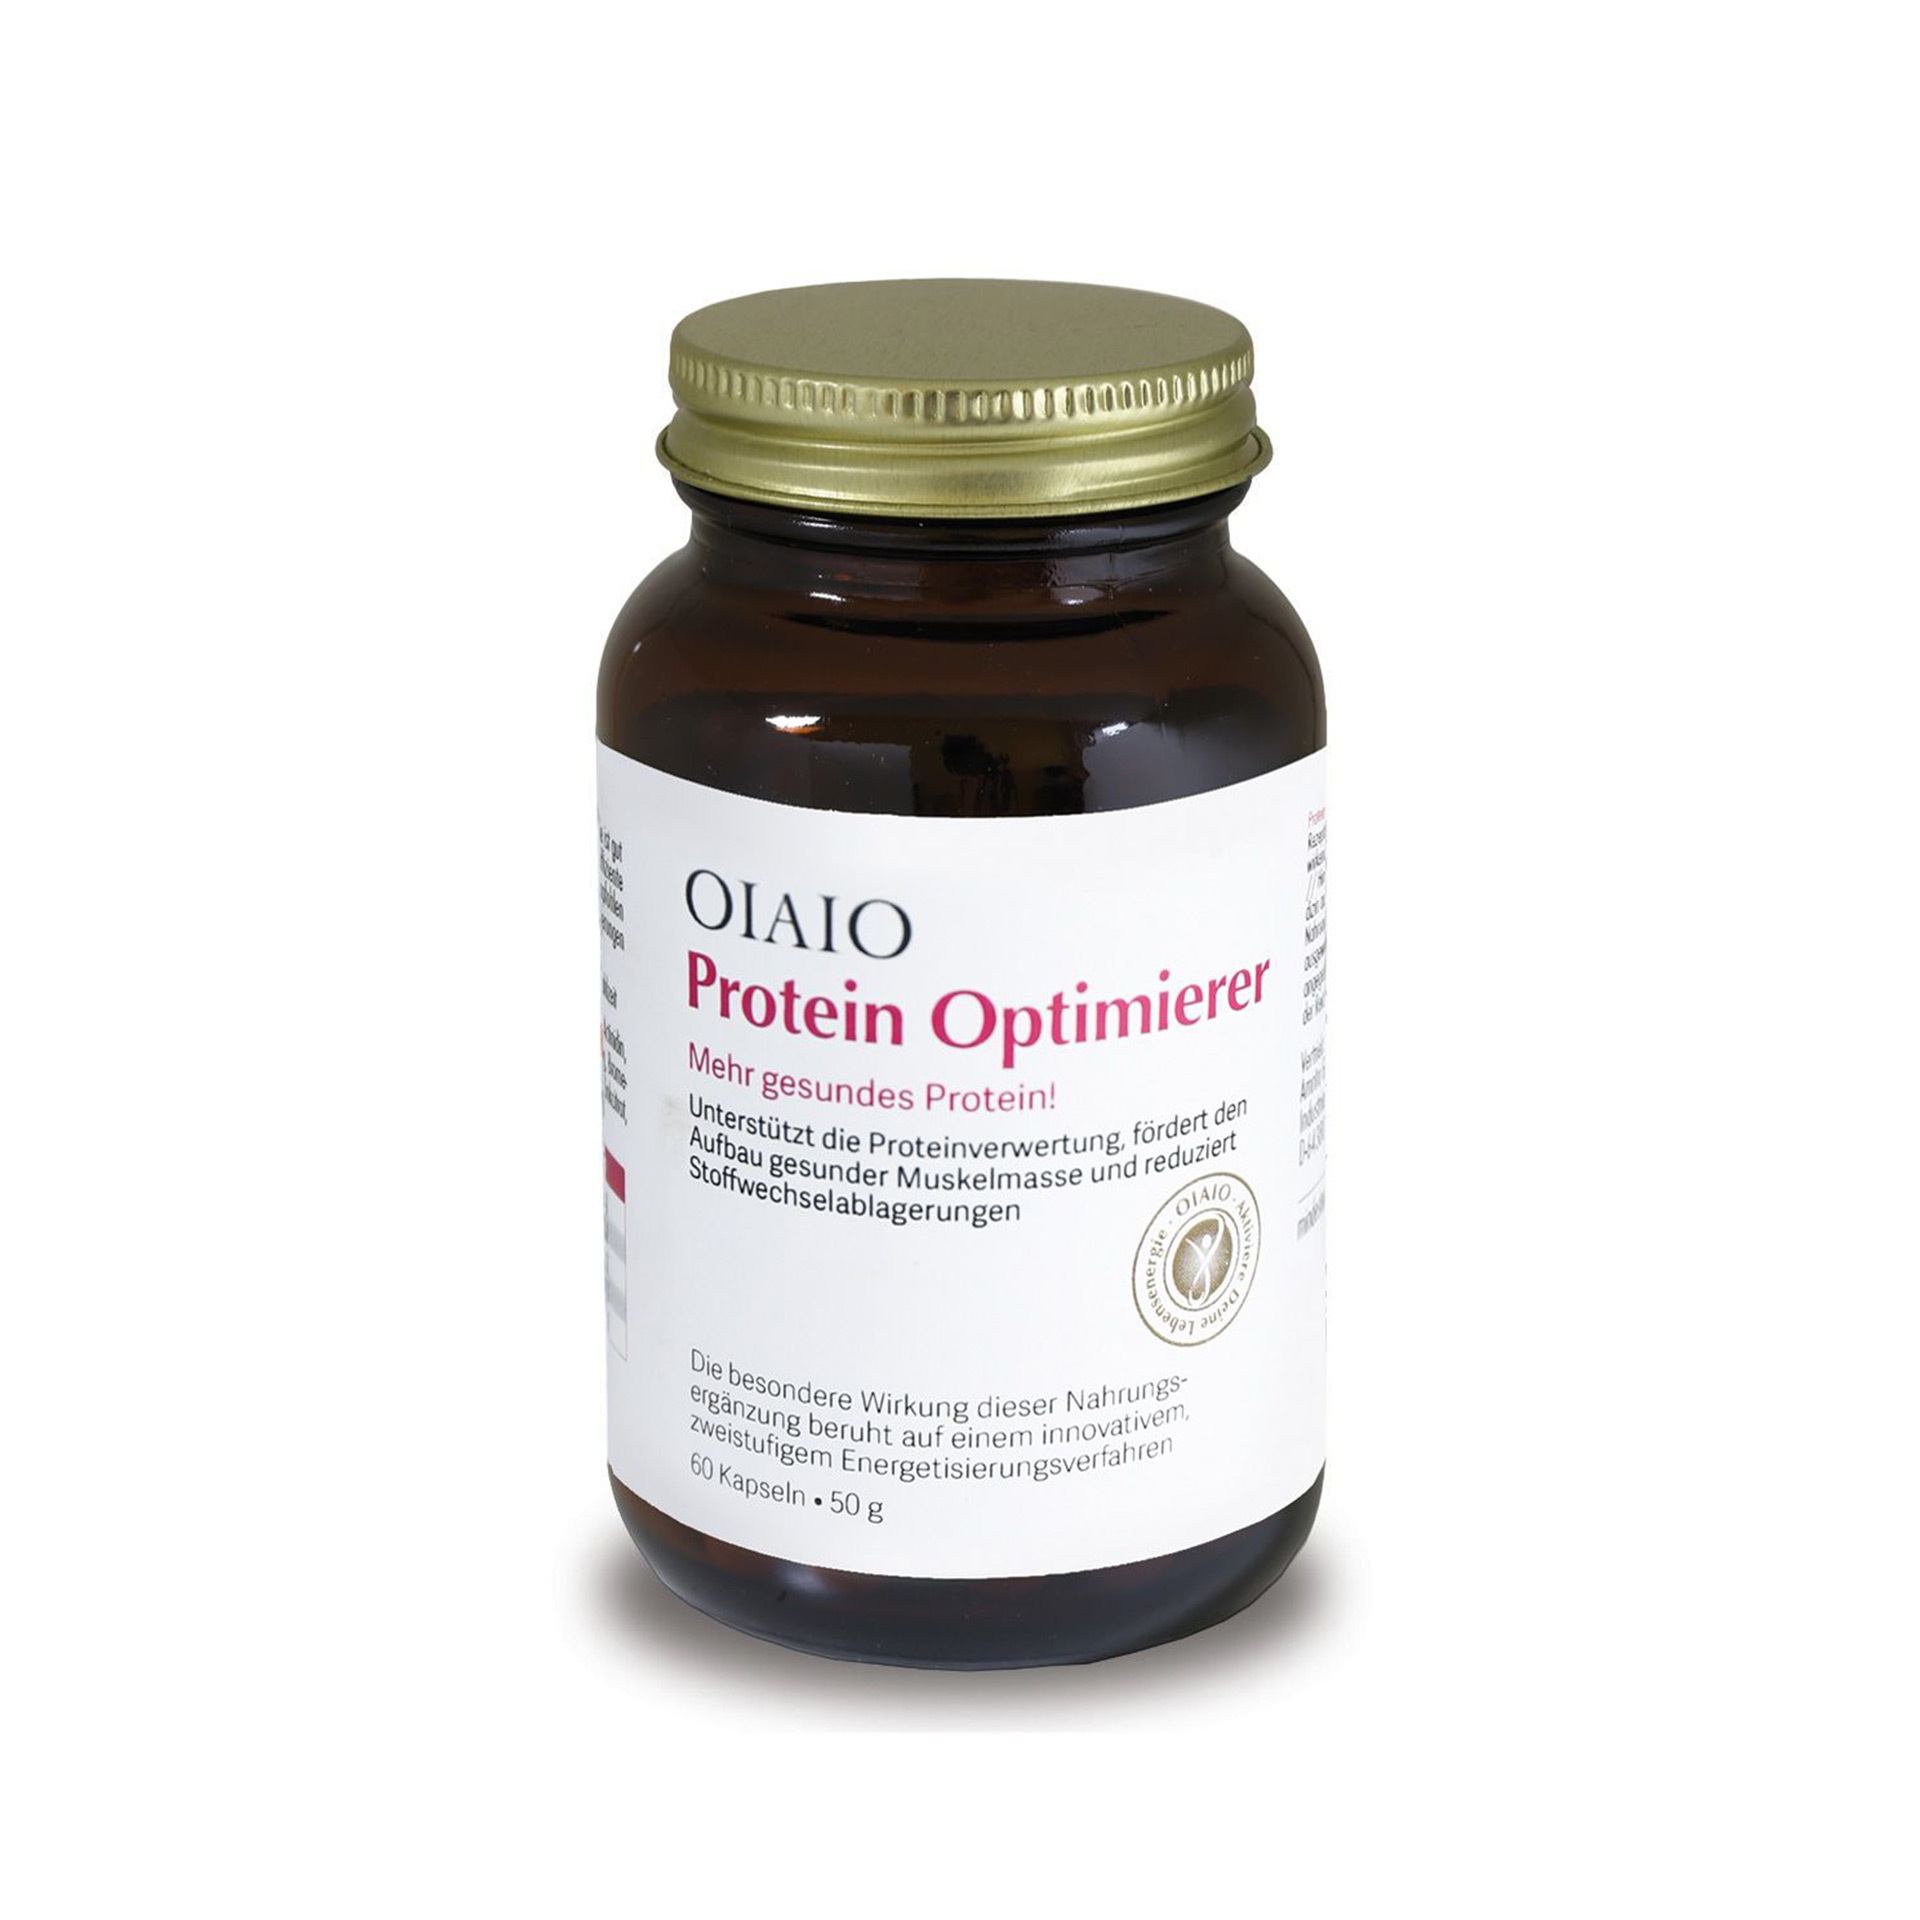 OIAIO Protein Optimierer: ausgewählter Mix natürlicher Enzyme für eine optimierte Proteinaufnahme